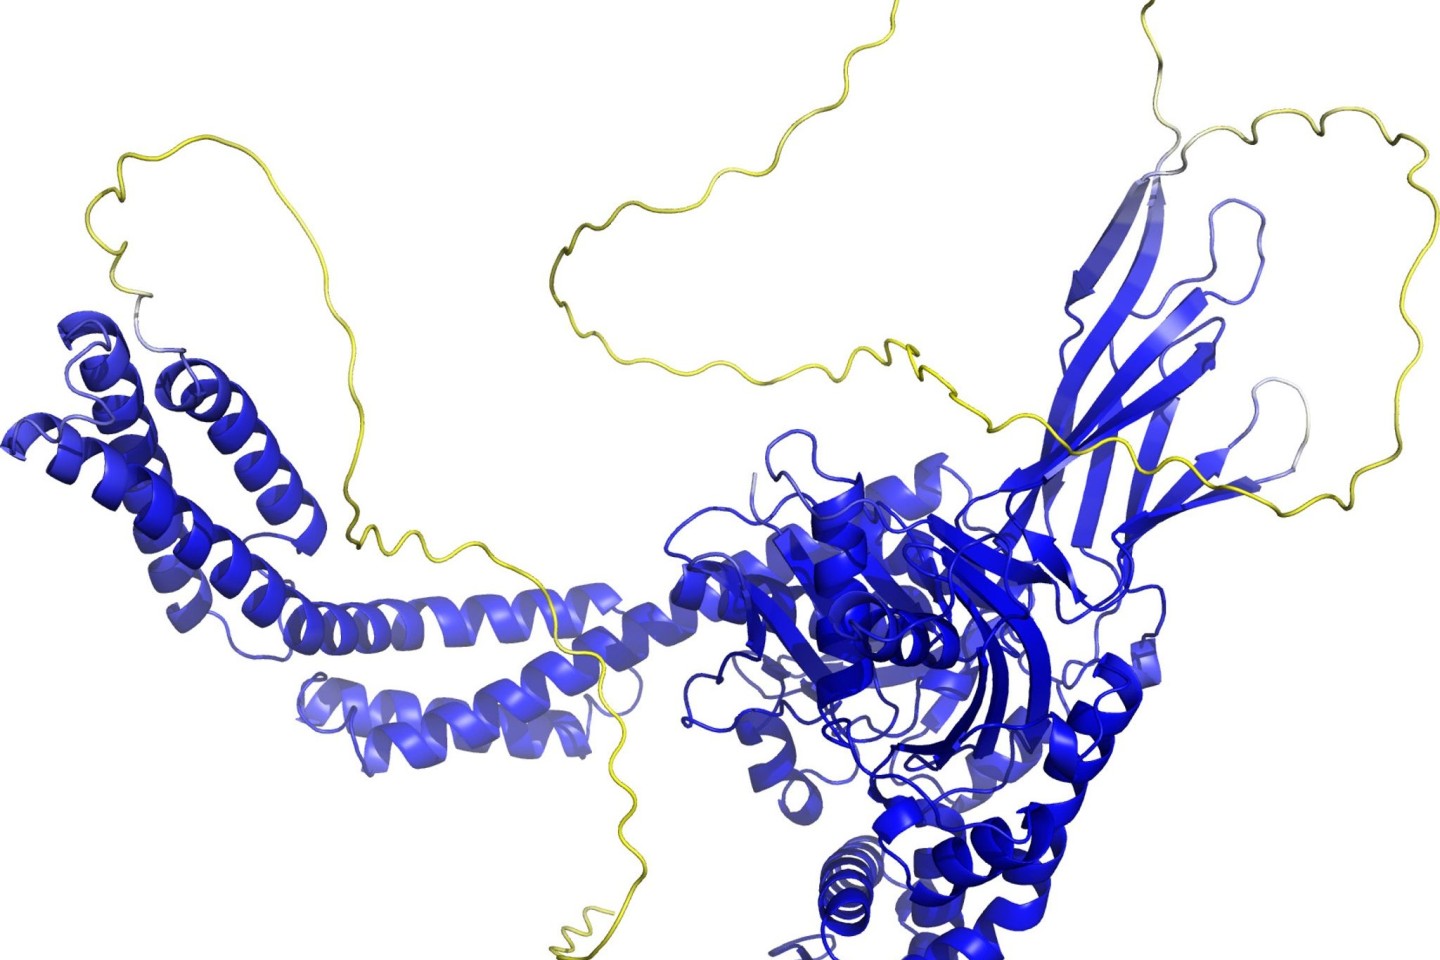 Von einem Computerprogramm errechnetes Rückgrat einer Proteinstruktur. Sogenannte Sekundärstrukturelemente sind als Bänder wiedergegeben. Die gelben Bereiche sind wahrscheinlich flexibel,...